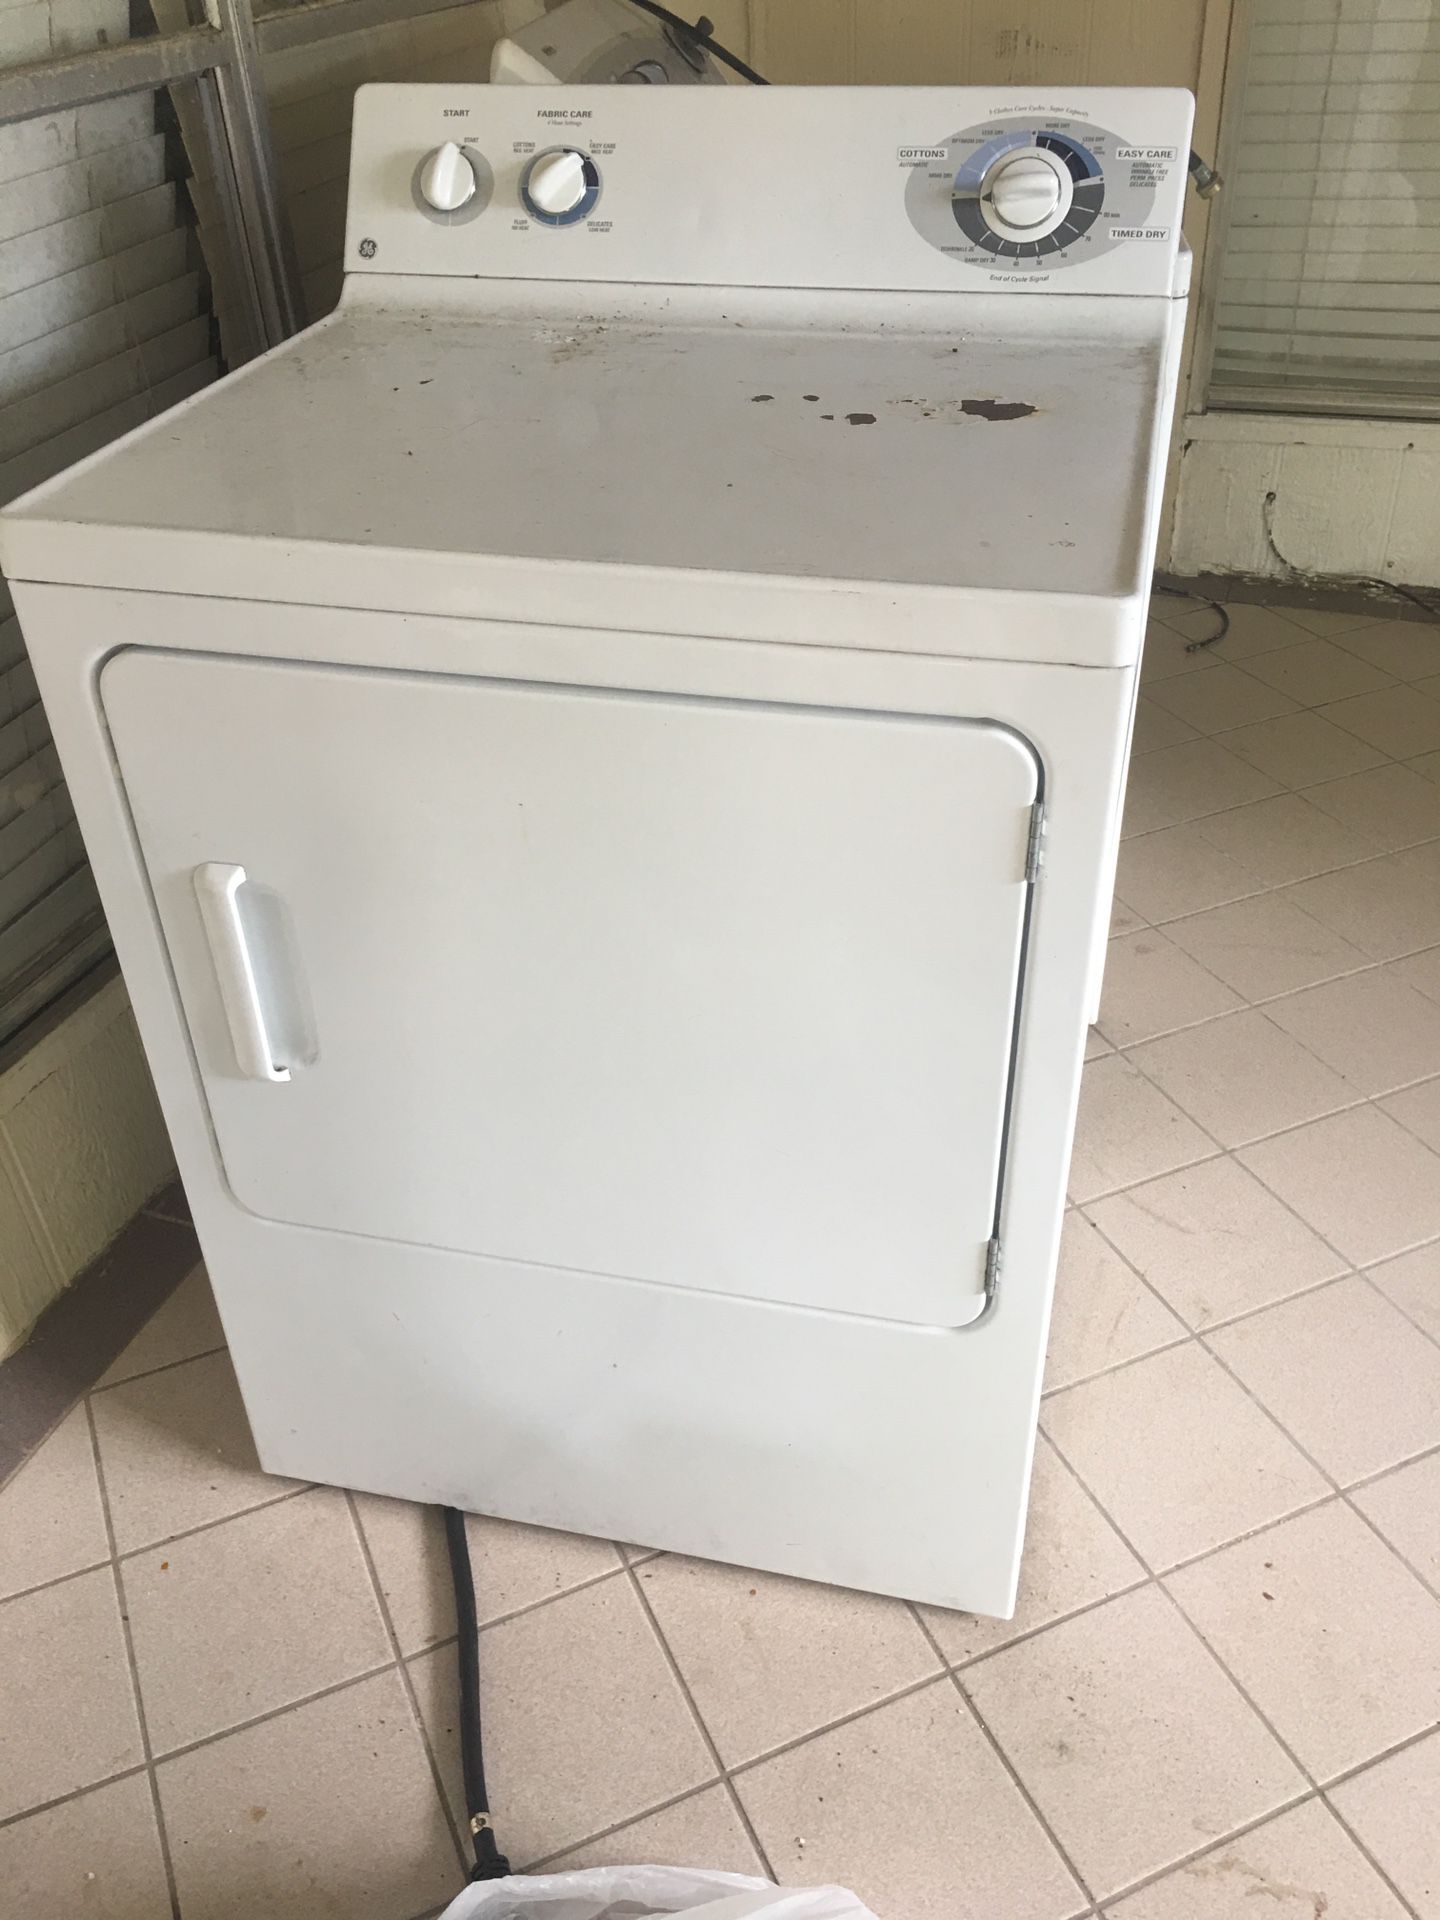 dry machine/dryer